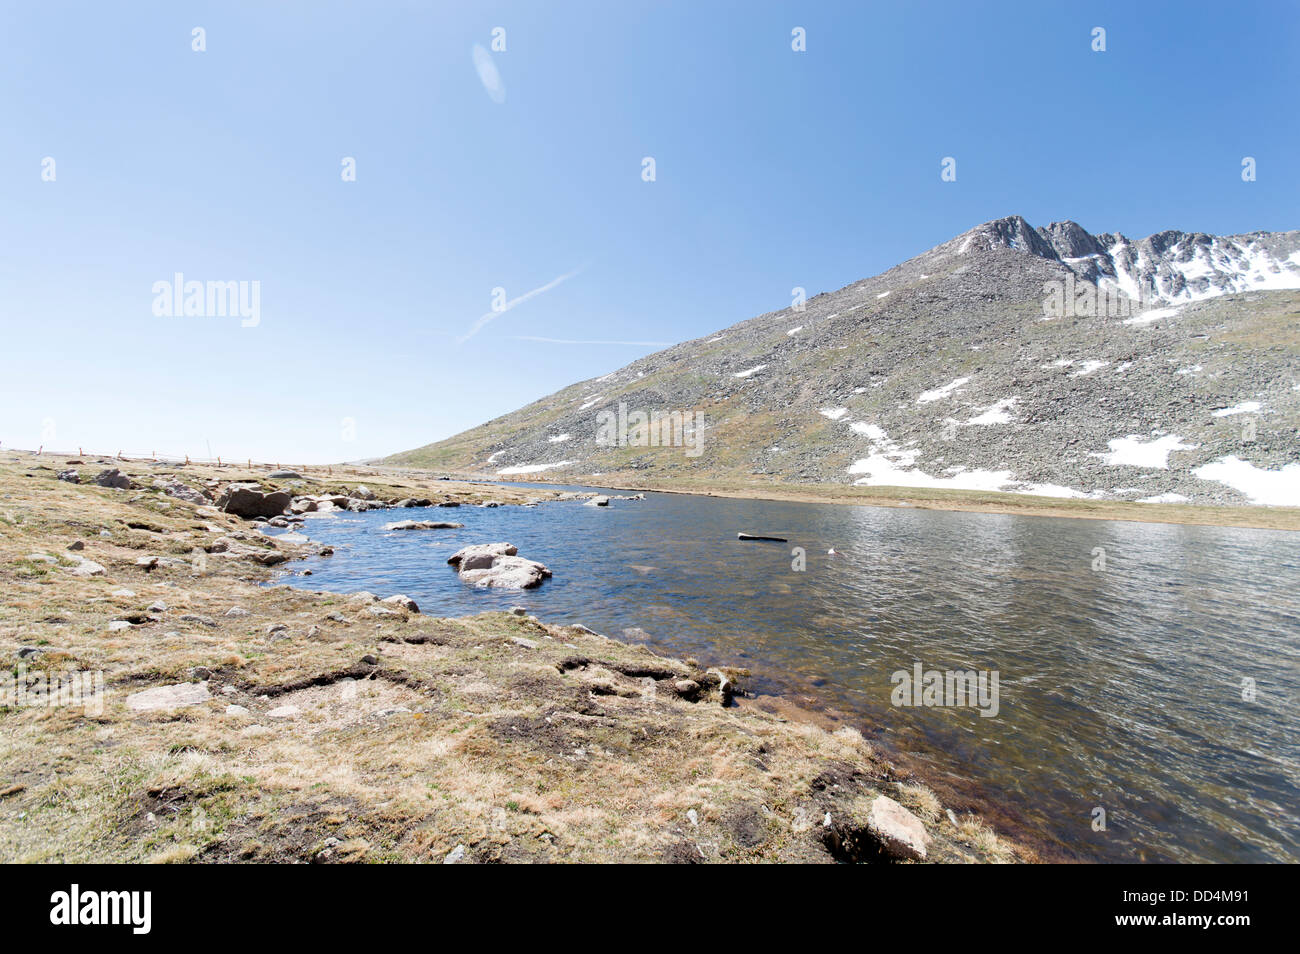 Il vertice e la zona dei laghi del Monte Evans, vicino a Denver, Colorado, STATI UNITI D'AMERICA Foto Stock